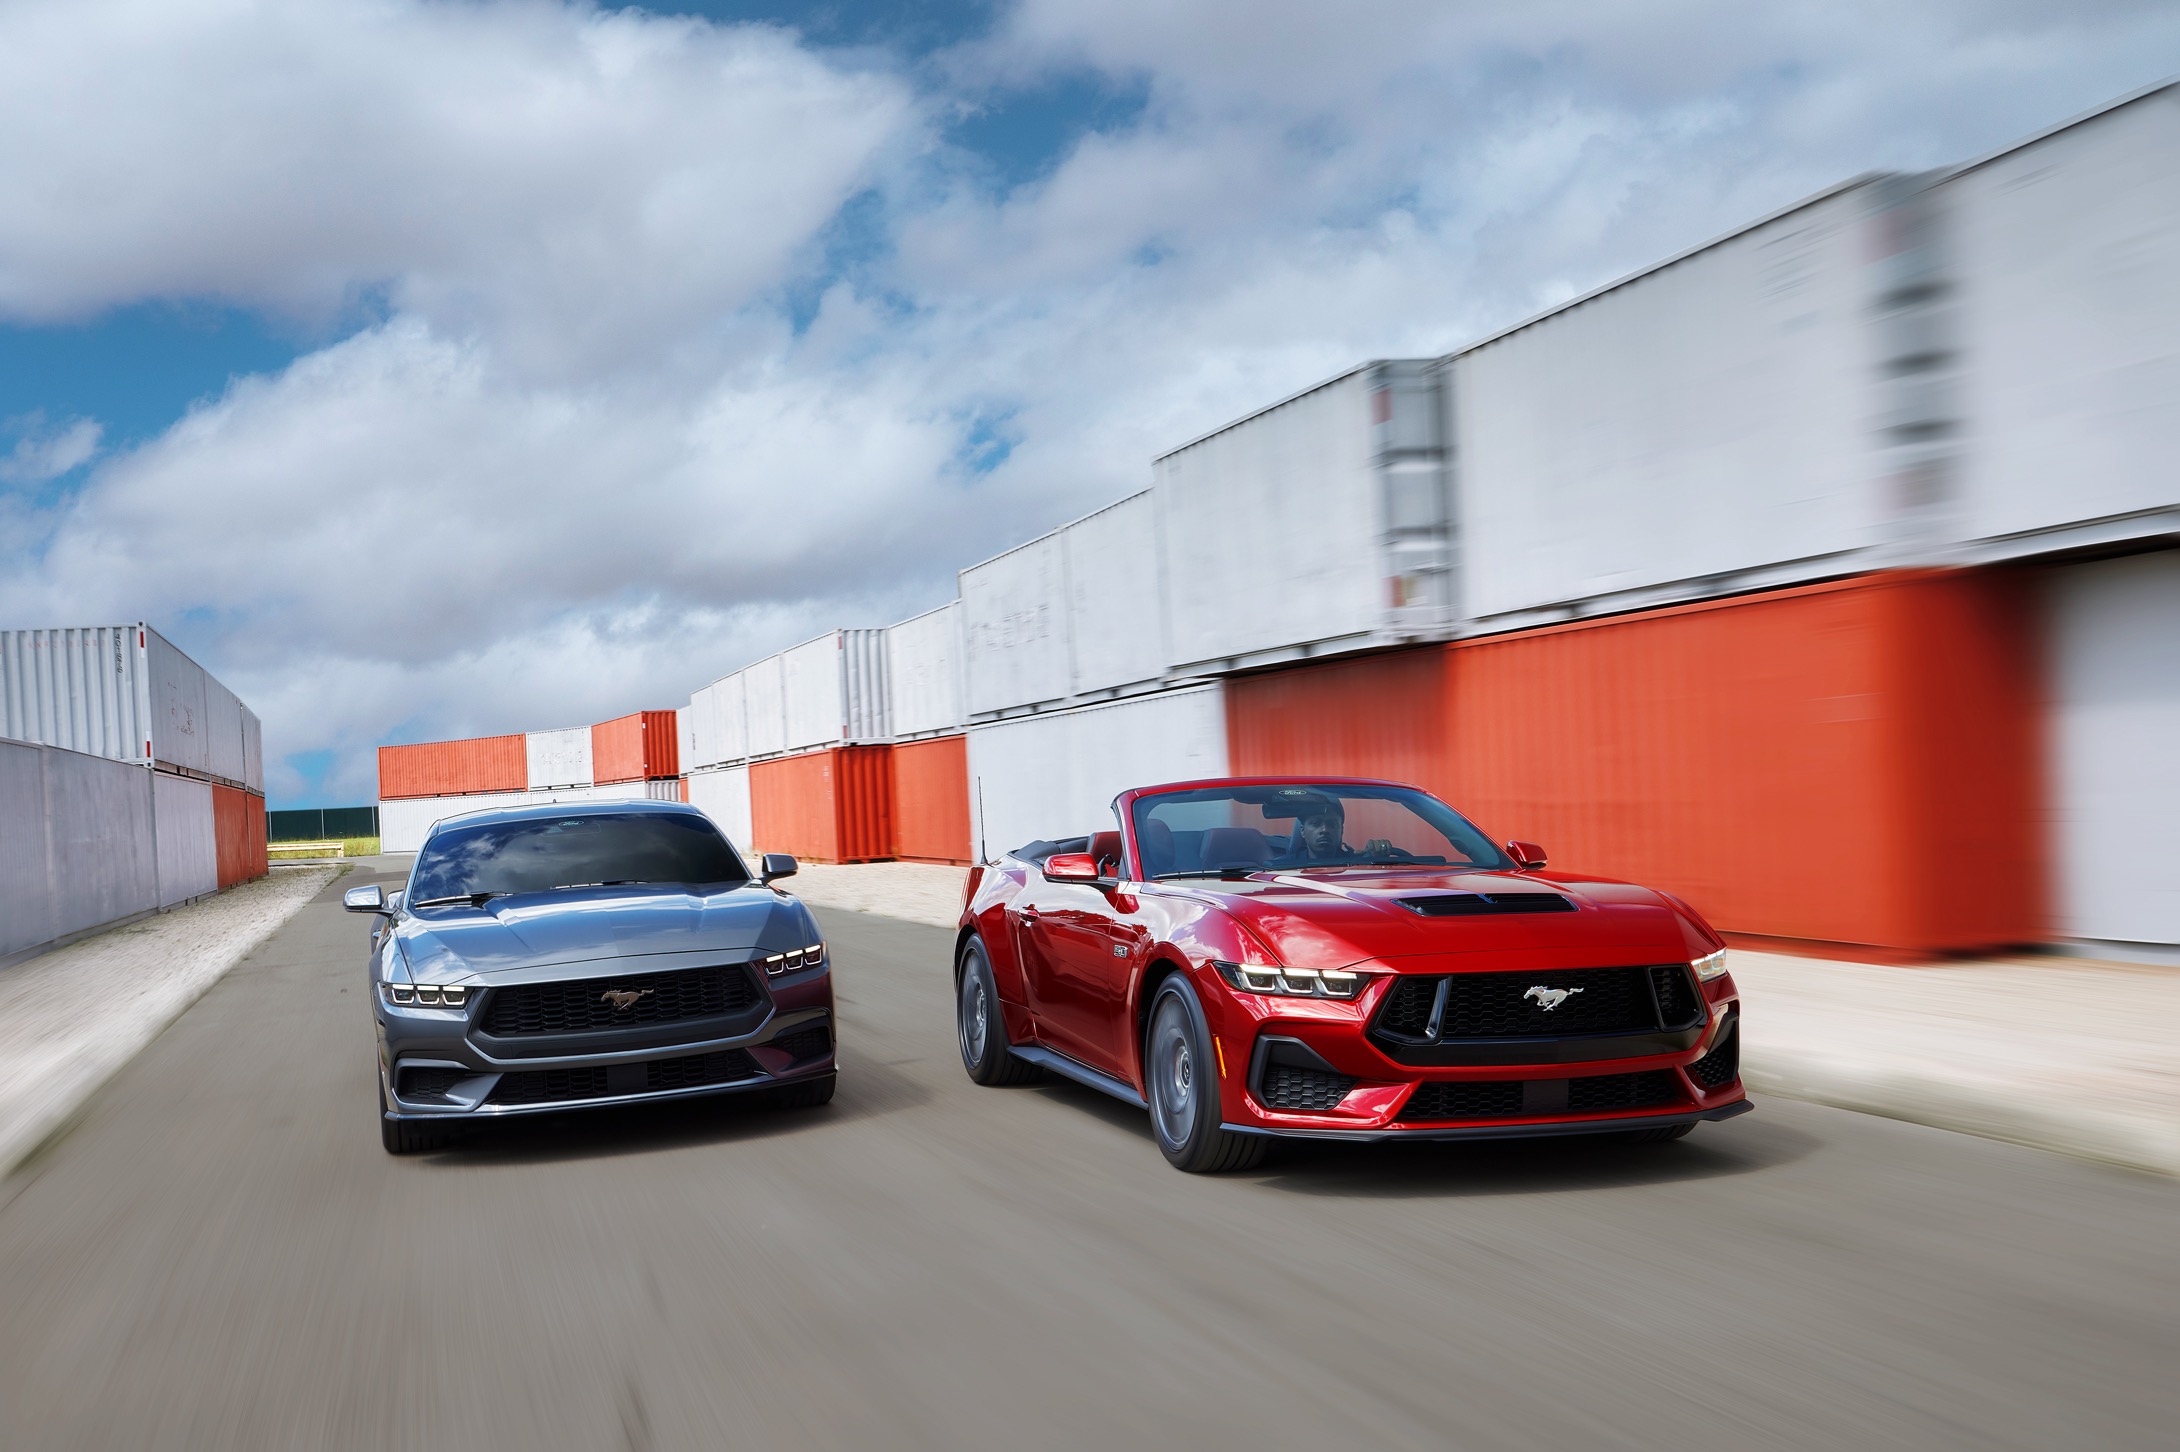 El nuevo Ford Mustang redefine la libertad de manejo con su cabina digital inmersiva, motores avanzados y estilo audaz